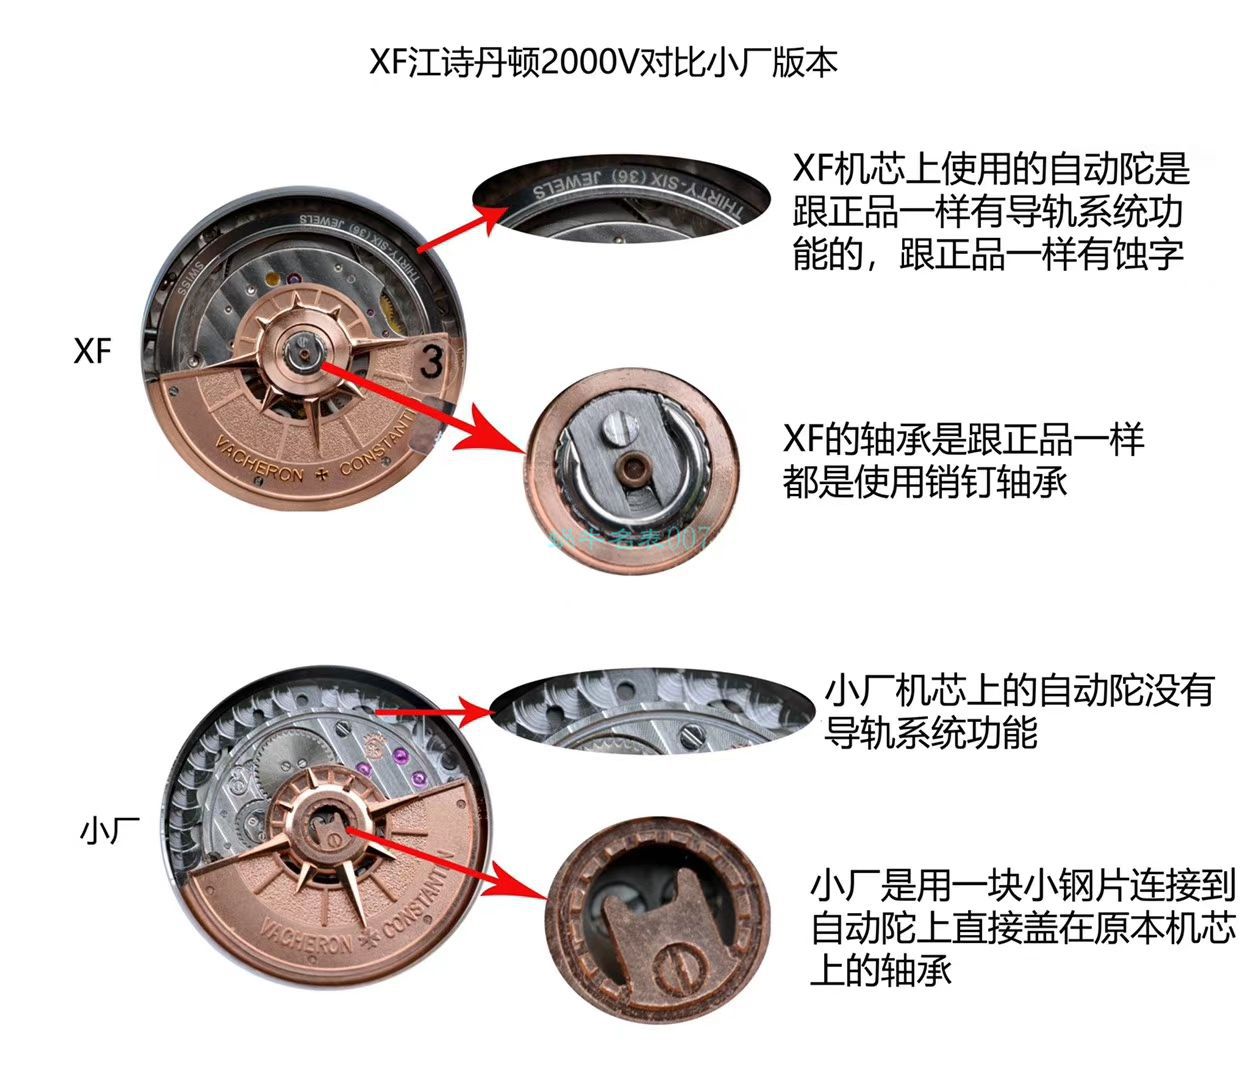 XF厂新品预告，顶级复刻江诗丹顿纵横四海系列2000V/120G-B122腕表 / JJ223